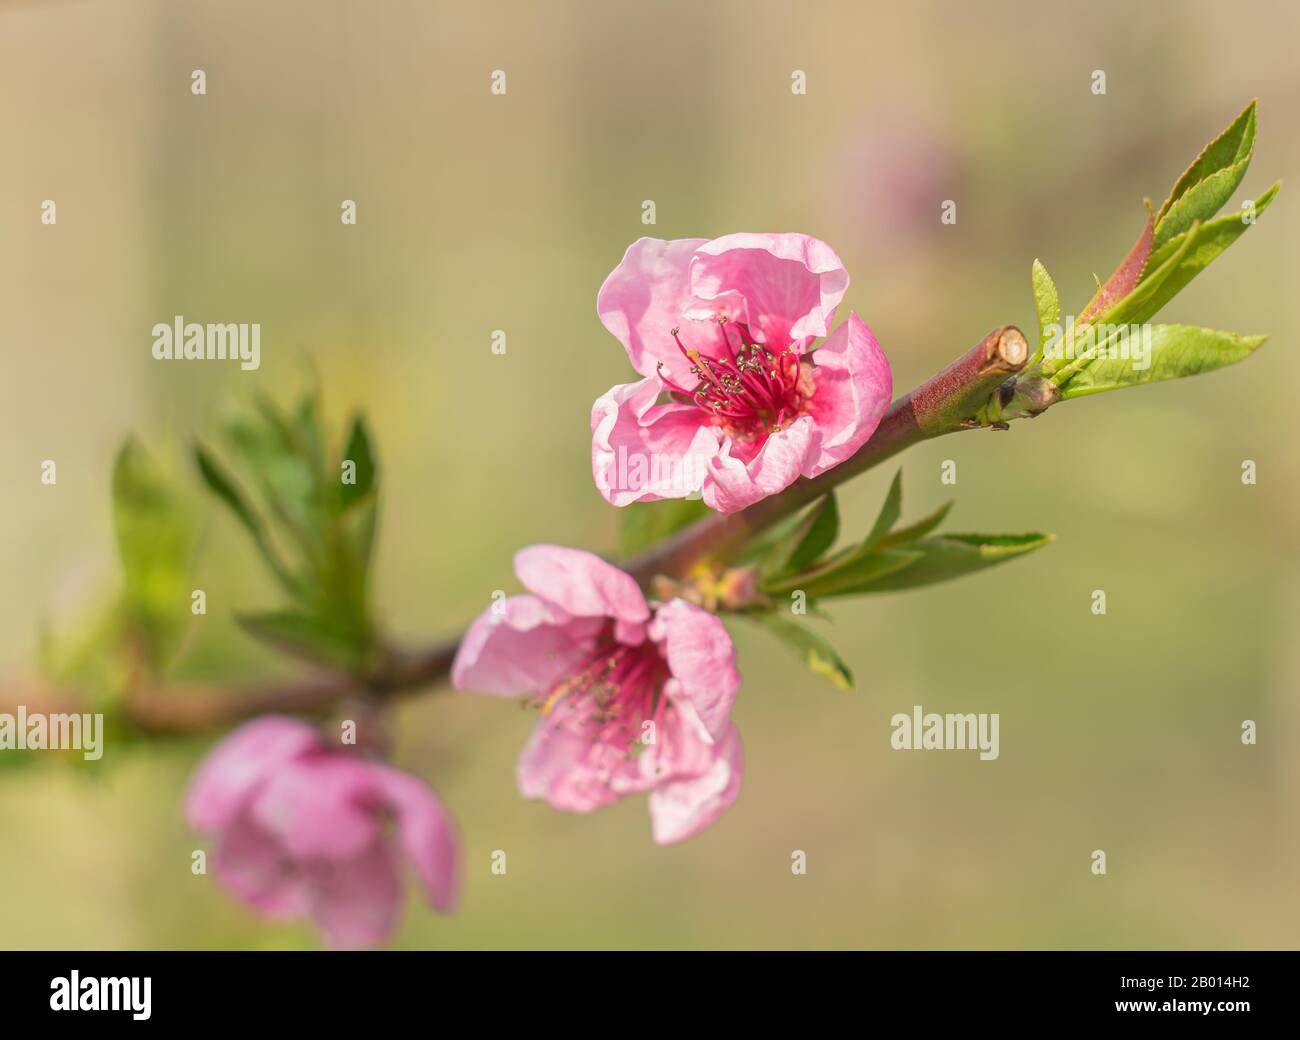 Rosafarbene Blumen auf grünem Hintergrund. Frühlingsblumen Hintergrund mit rosafarbenen Blumen. Nahaufnahme des künstlerischen Effekts. Stockfoto